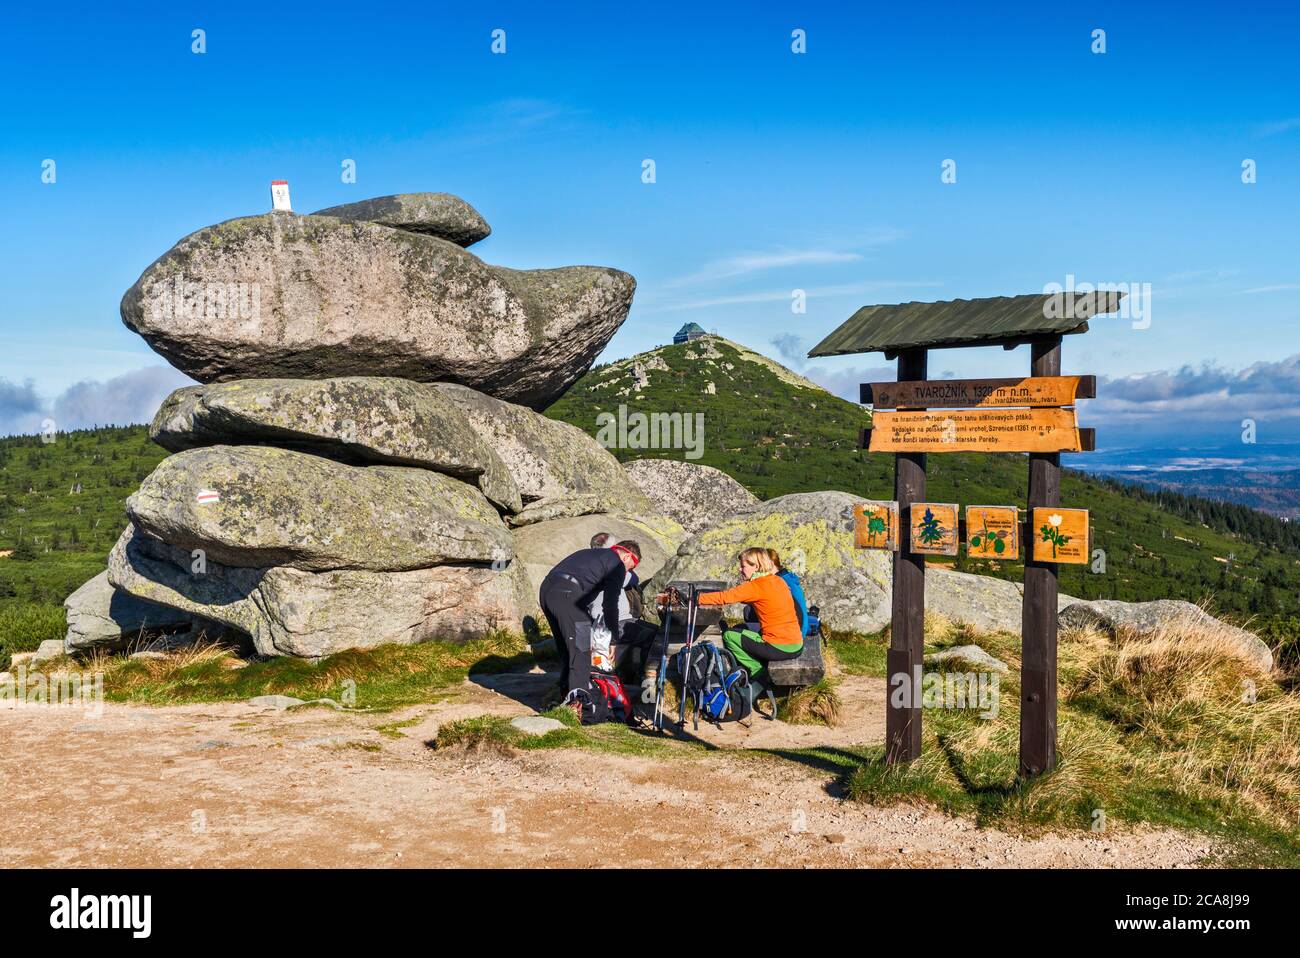 Wanderer am Picknicktisch an der Felsformation, internationaler Grenzposten auf der Spitze, in Karkonosze-Bergkette, Karkonosze Natl Park, Niederschlesien, Polen Stockfoto